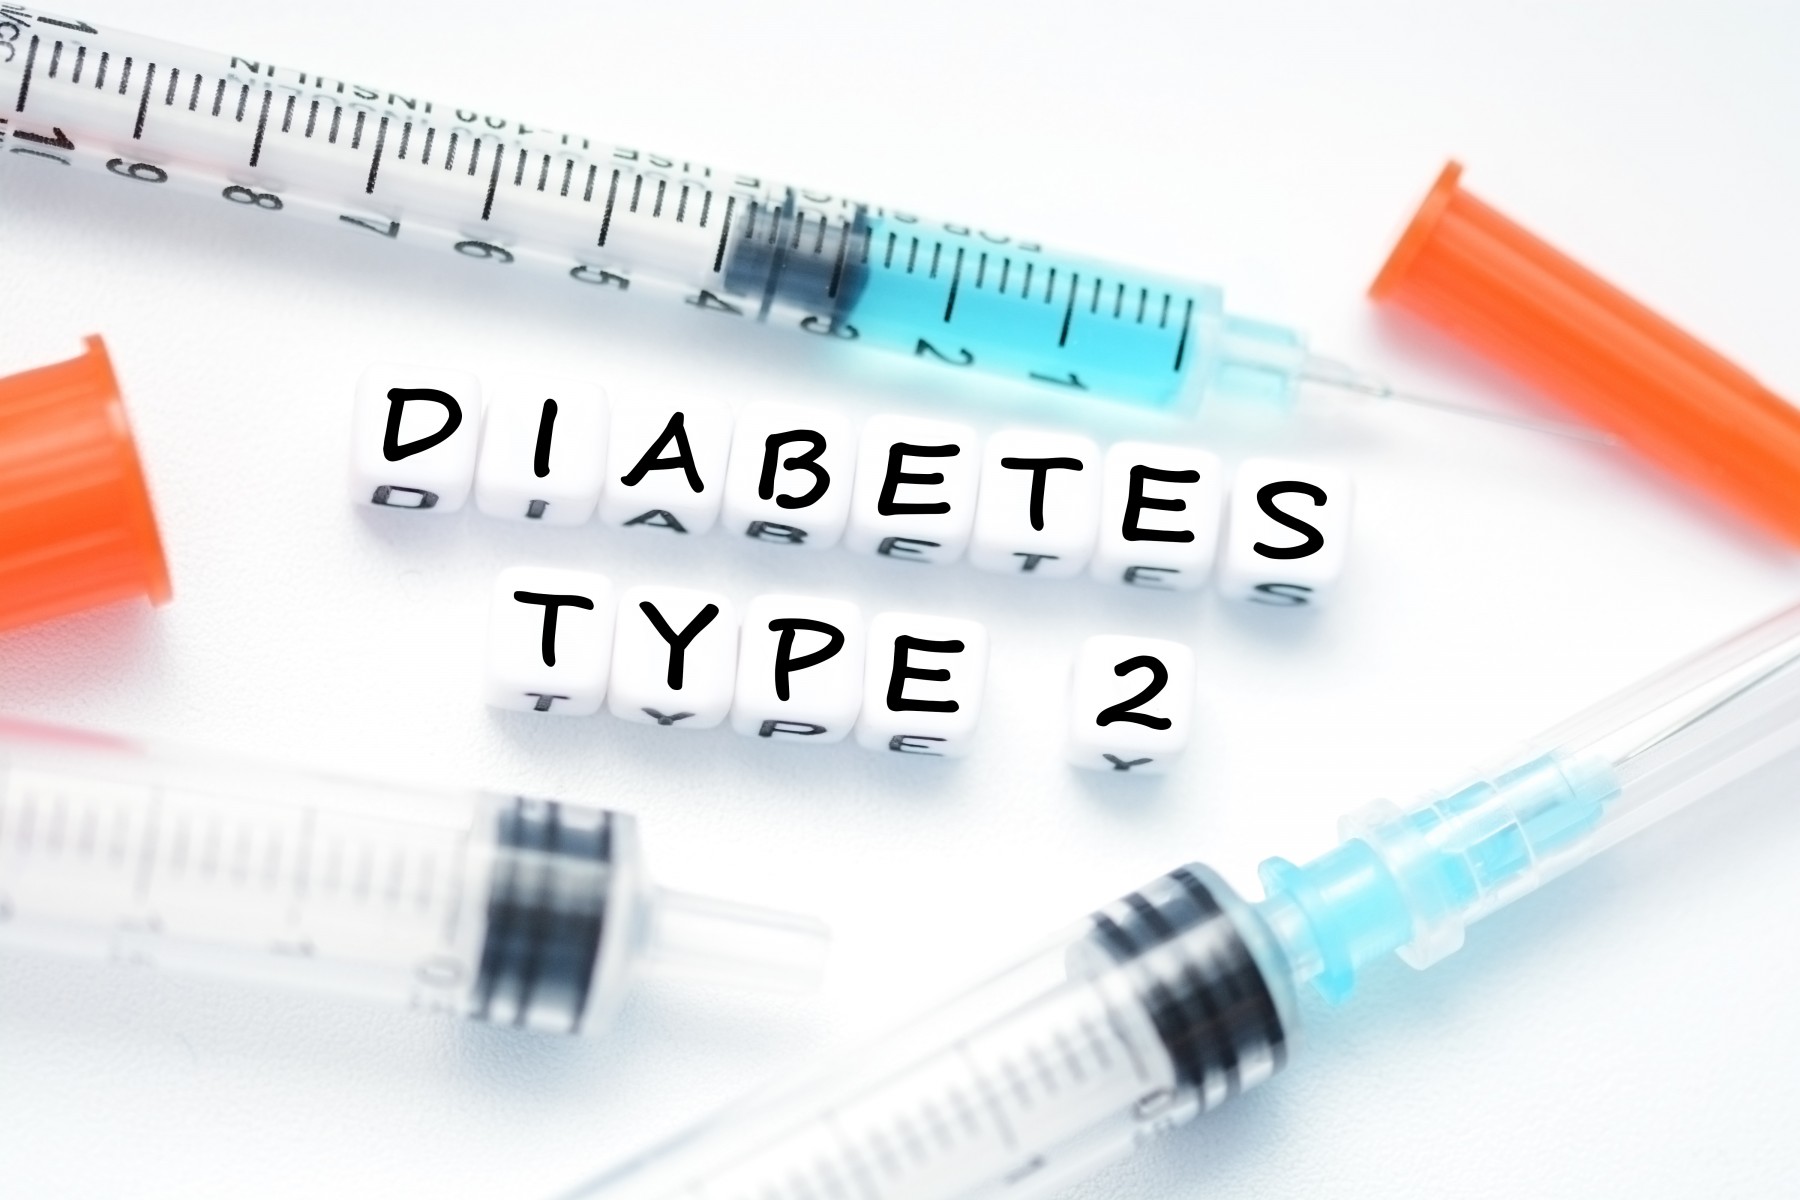 type2diabetes - symptoms of type 2 diabetes